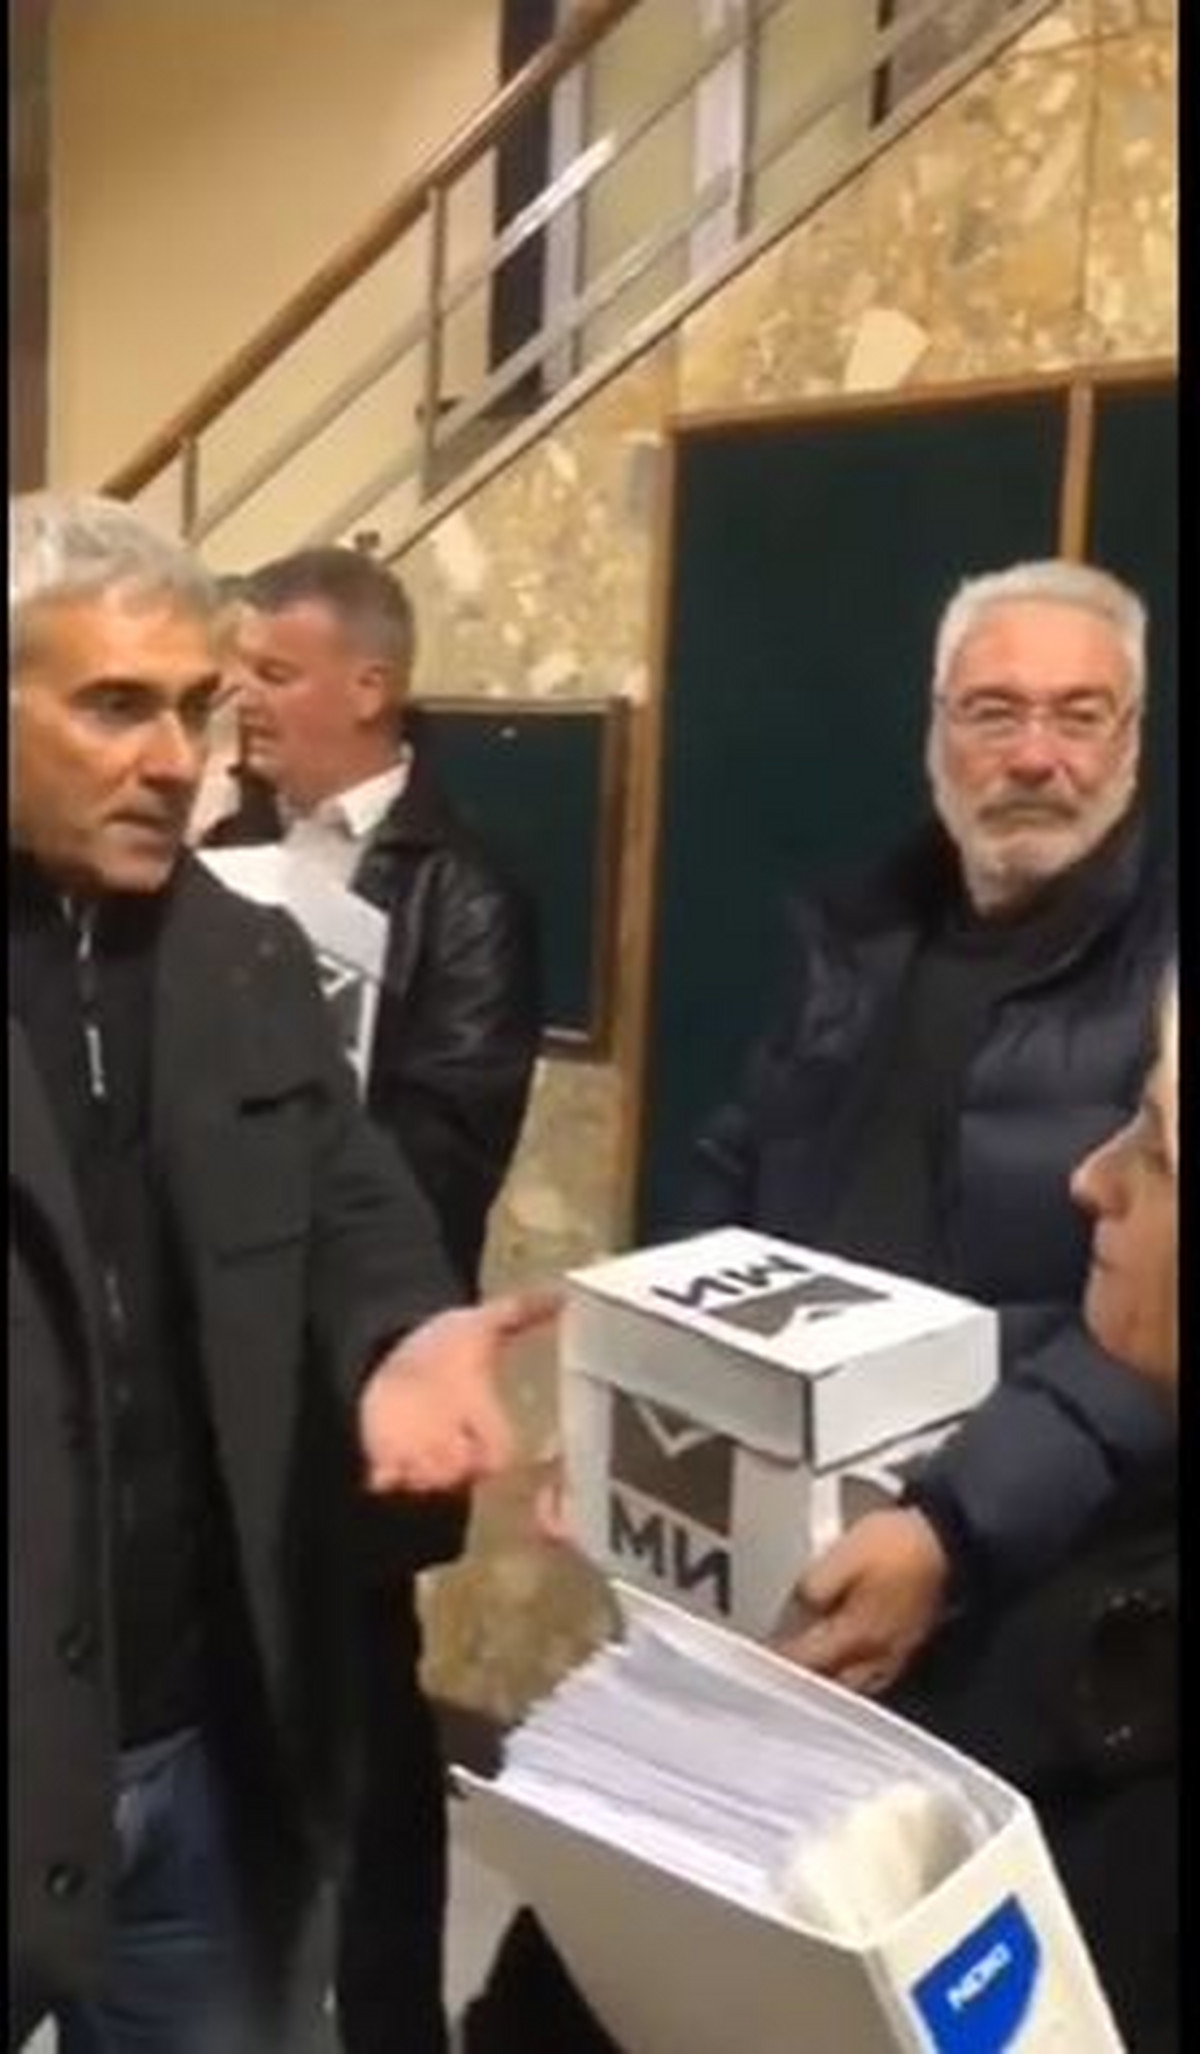 Jerković napravio "incident" pred kamerama prilikom predaje republičke liste "Mi"